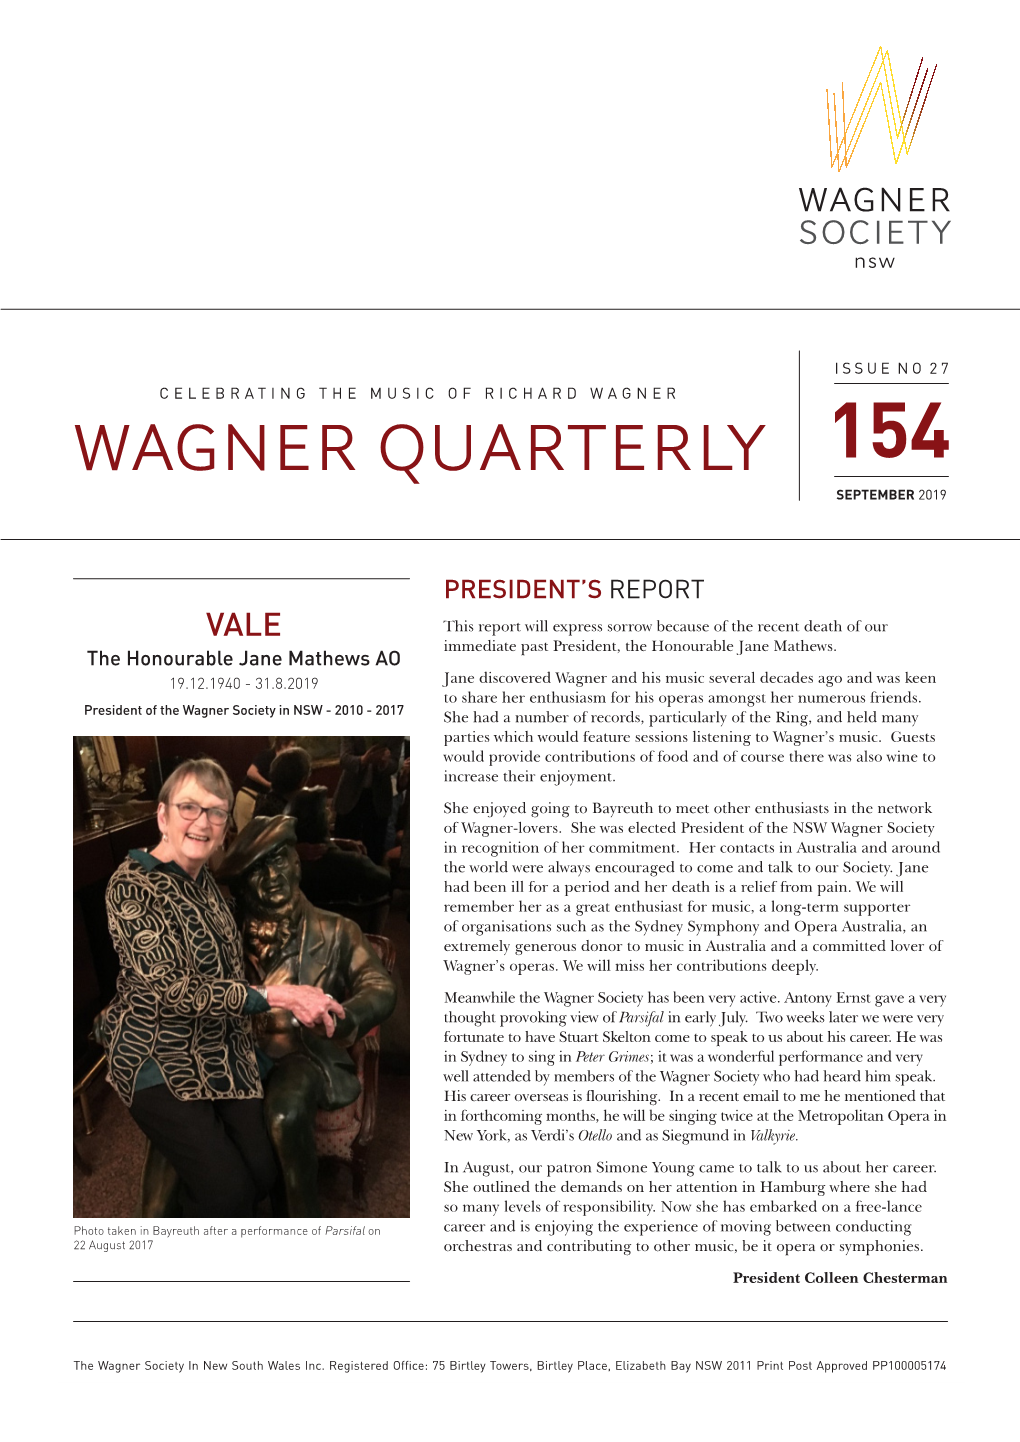 Wagner Quarterly 154 September 2019